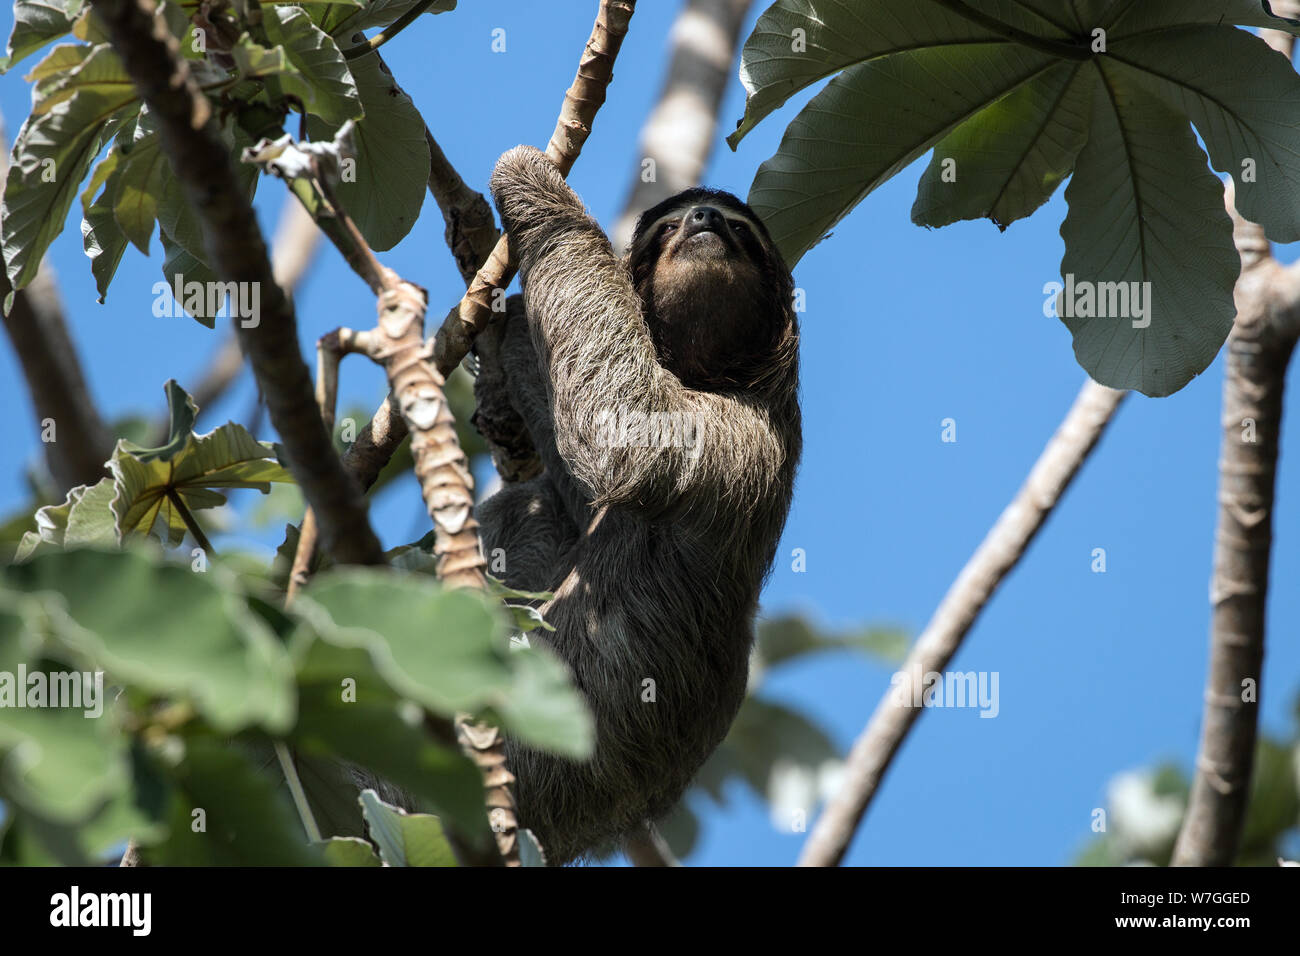 Nahaufnahme des Drei-toed Sloth in Cecropia Baum, Panama City. Wissenschaftliche Name dieses Tier ist Bradypus varigatus. In Lateinamerika gefunden. Stockfoto